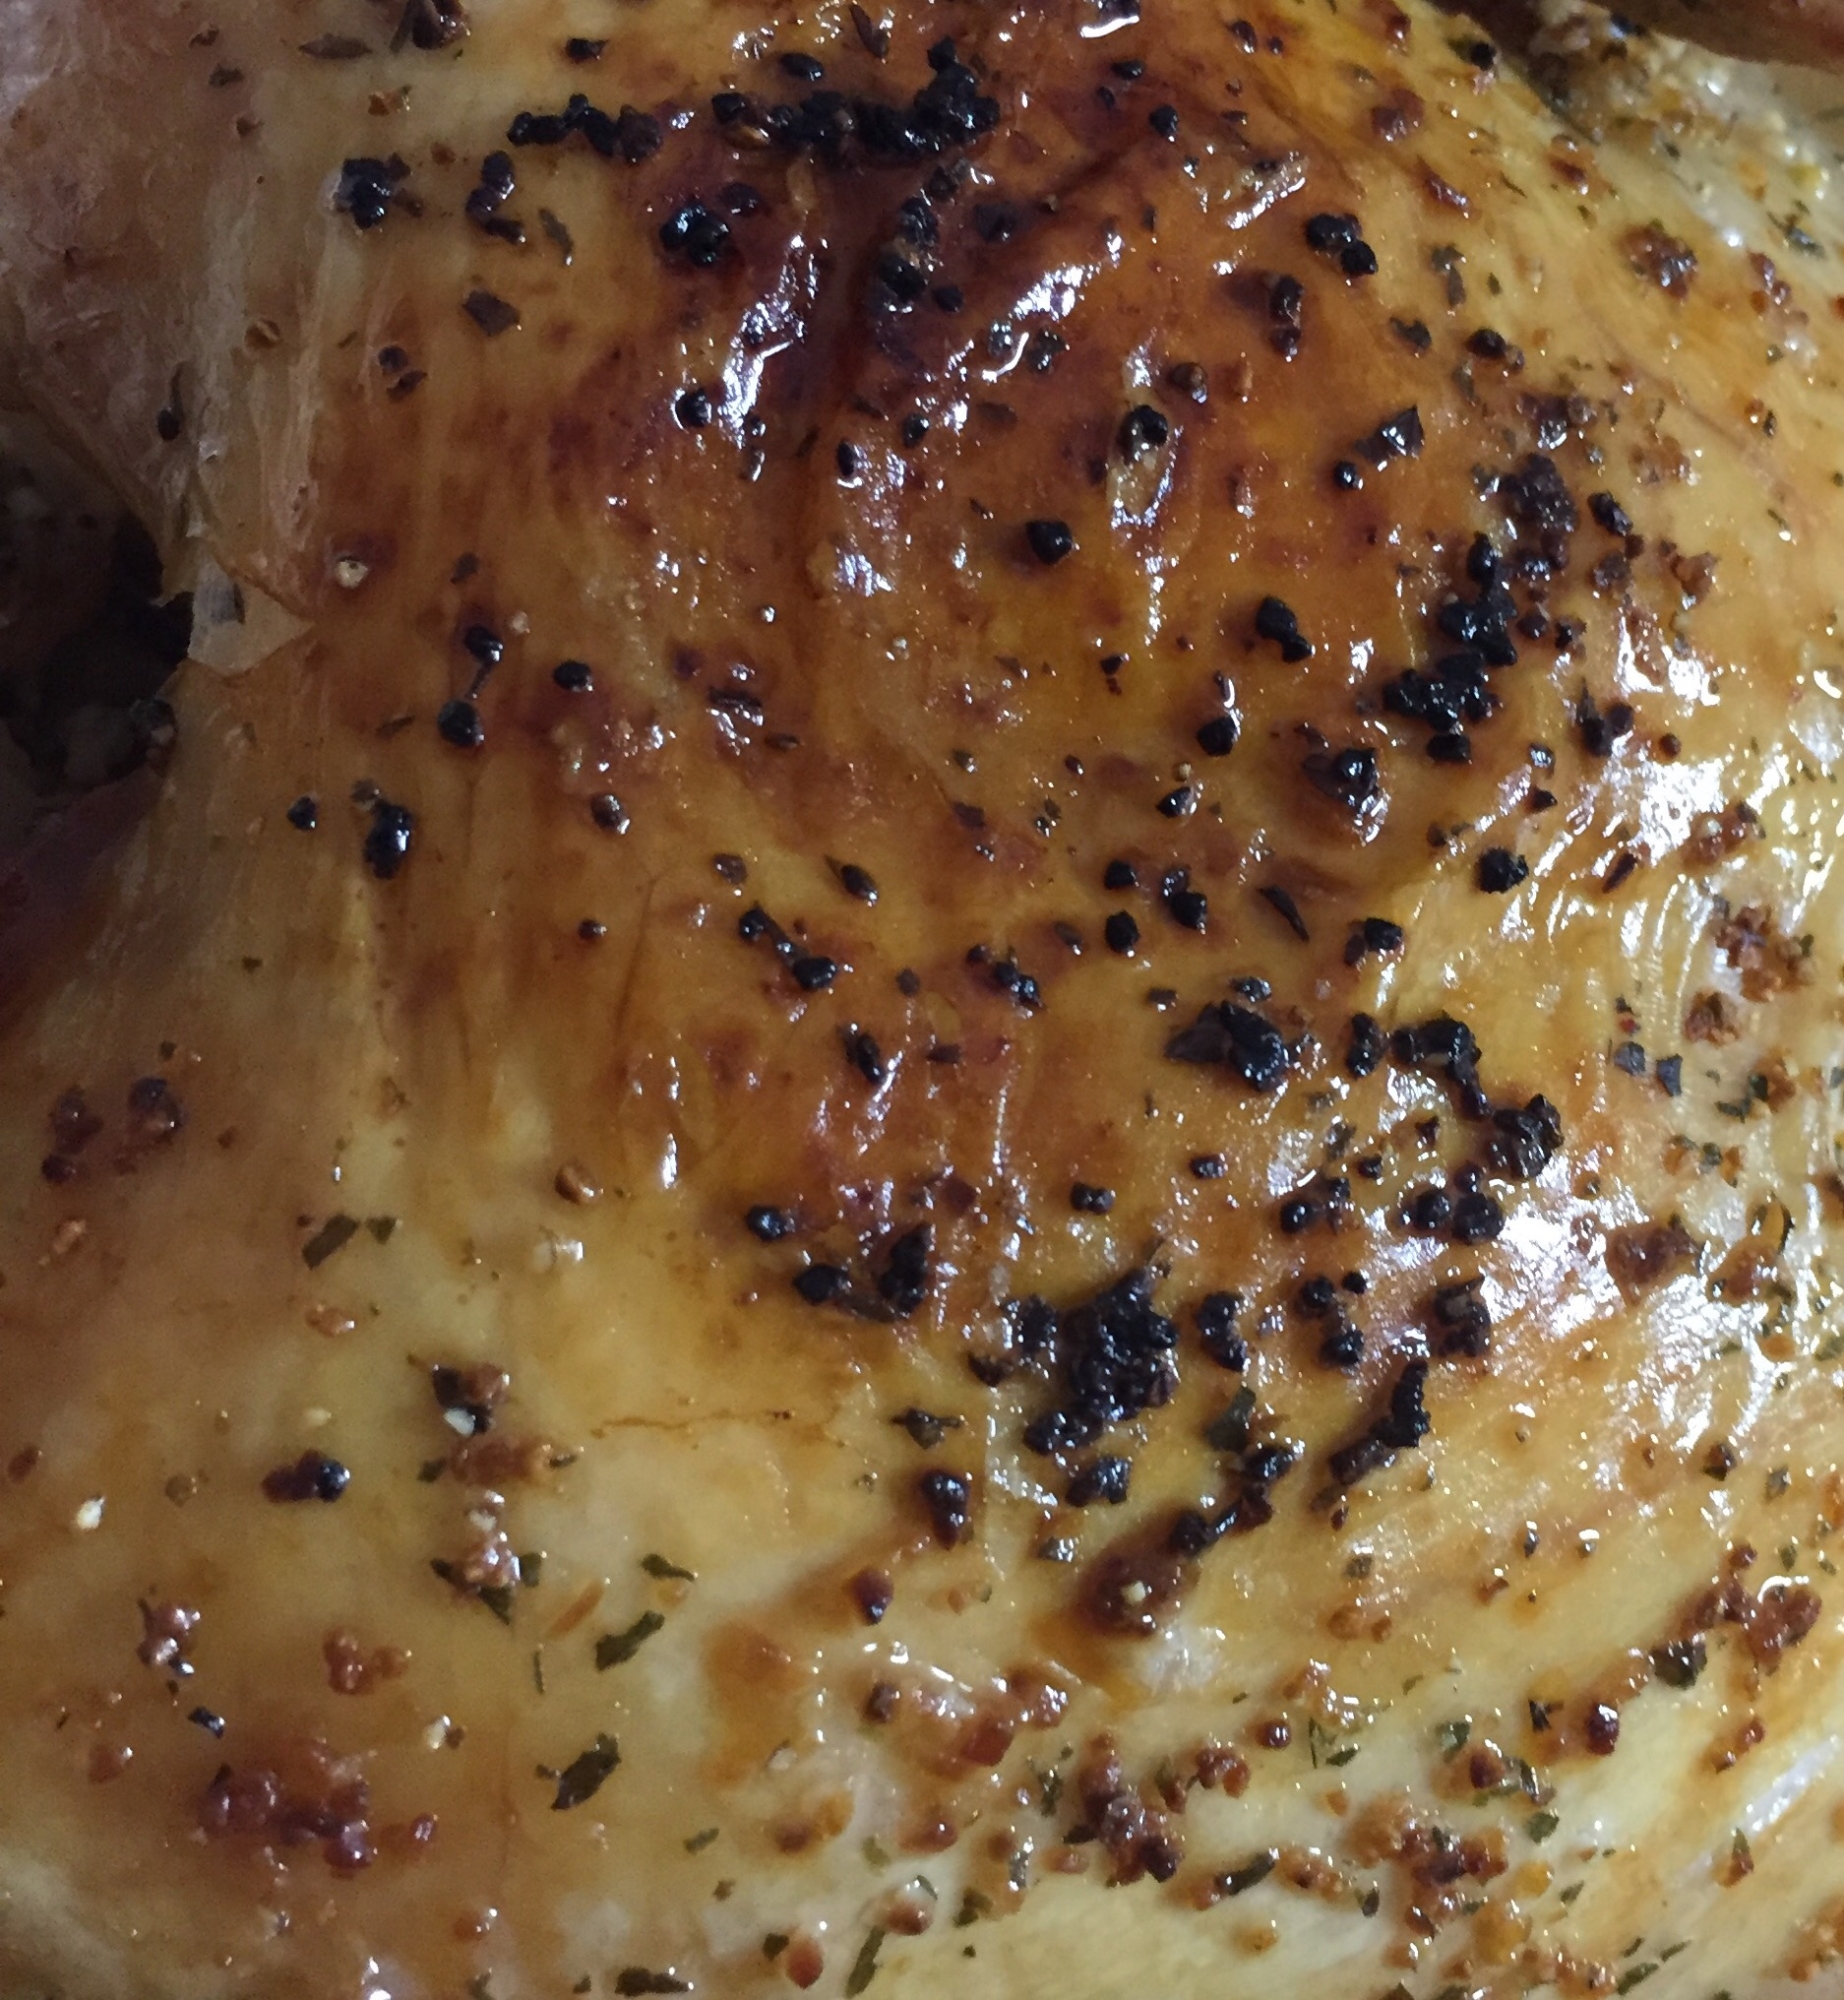 鶏肉のパリパリマジックソルト焼き